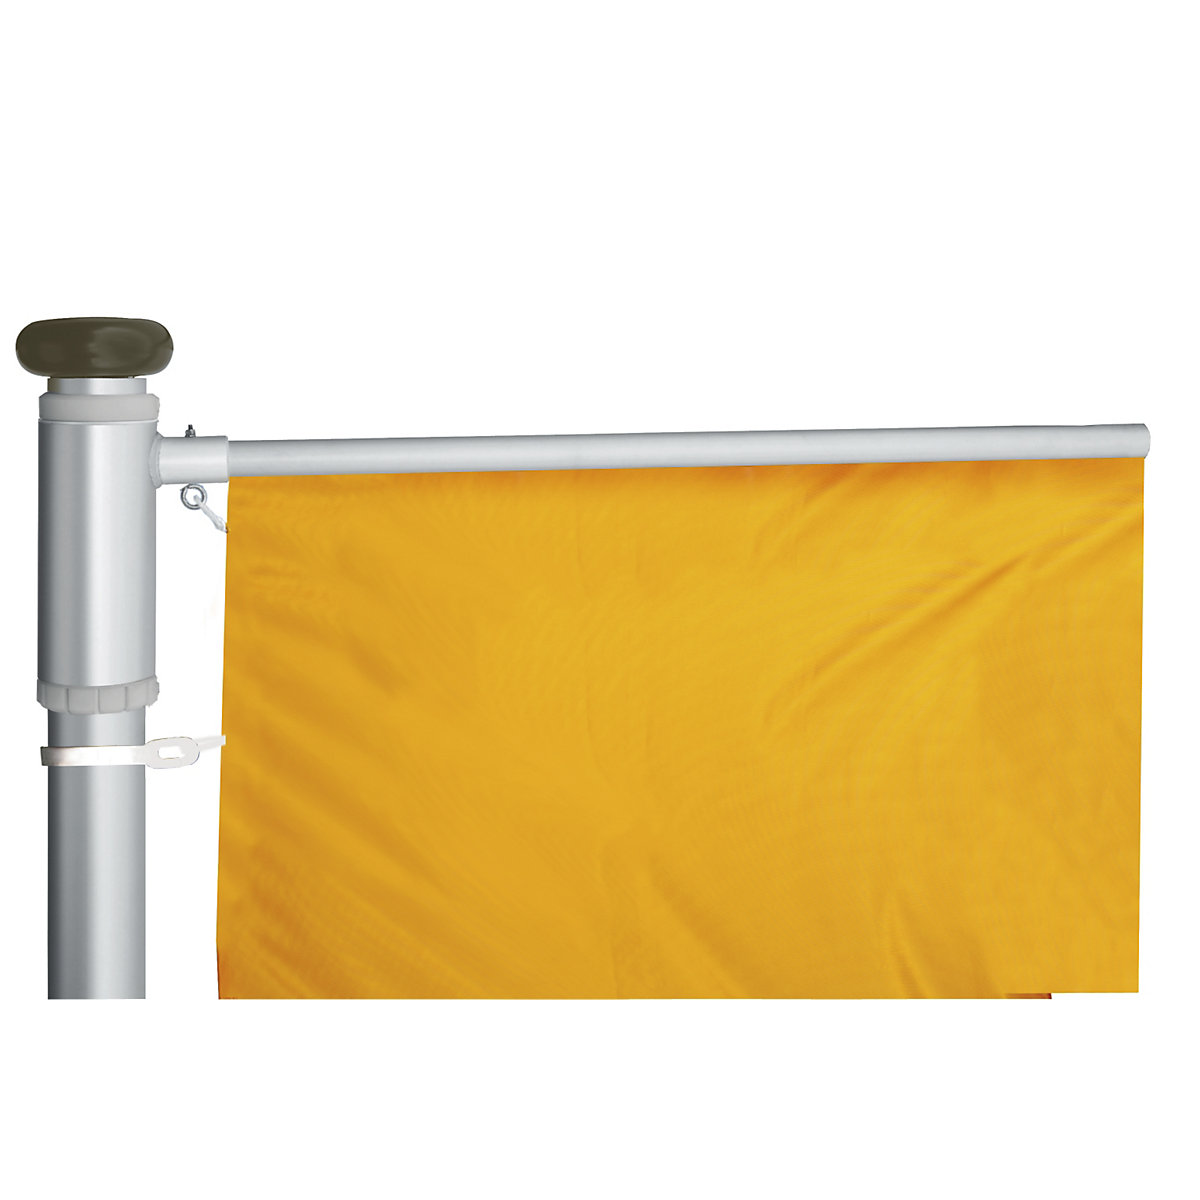 Mannus – Maszt flagowy z aluminium PRESTIGE (Zdjęcie produktu 6)